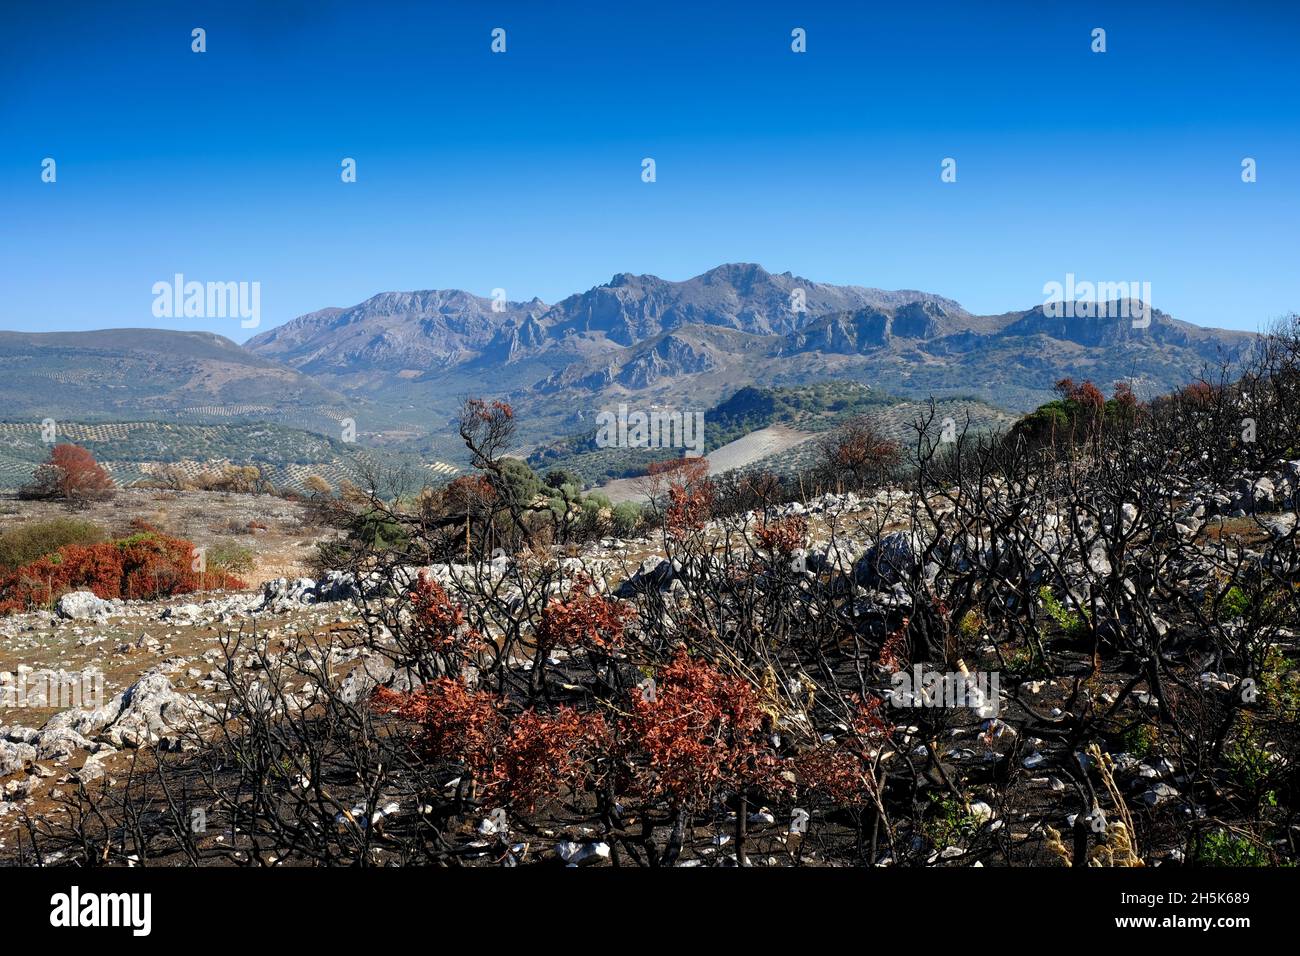 Paysage d'arbres et de plantes brûlés et isolés après un feu de forêt d'été dans la région d'Algar du Parc naturel de Sierras Subbeticas, Andalousie, Espagne Banque D'Images